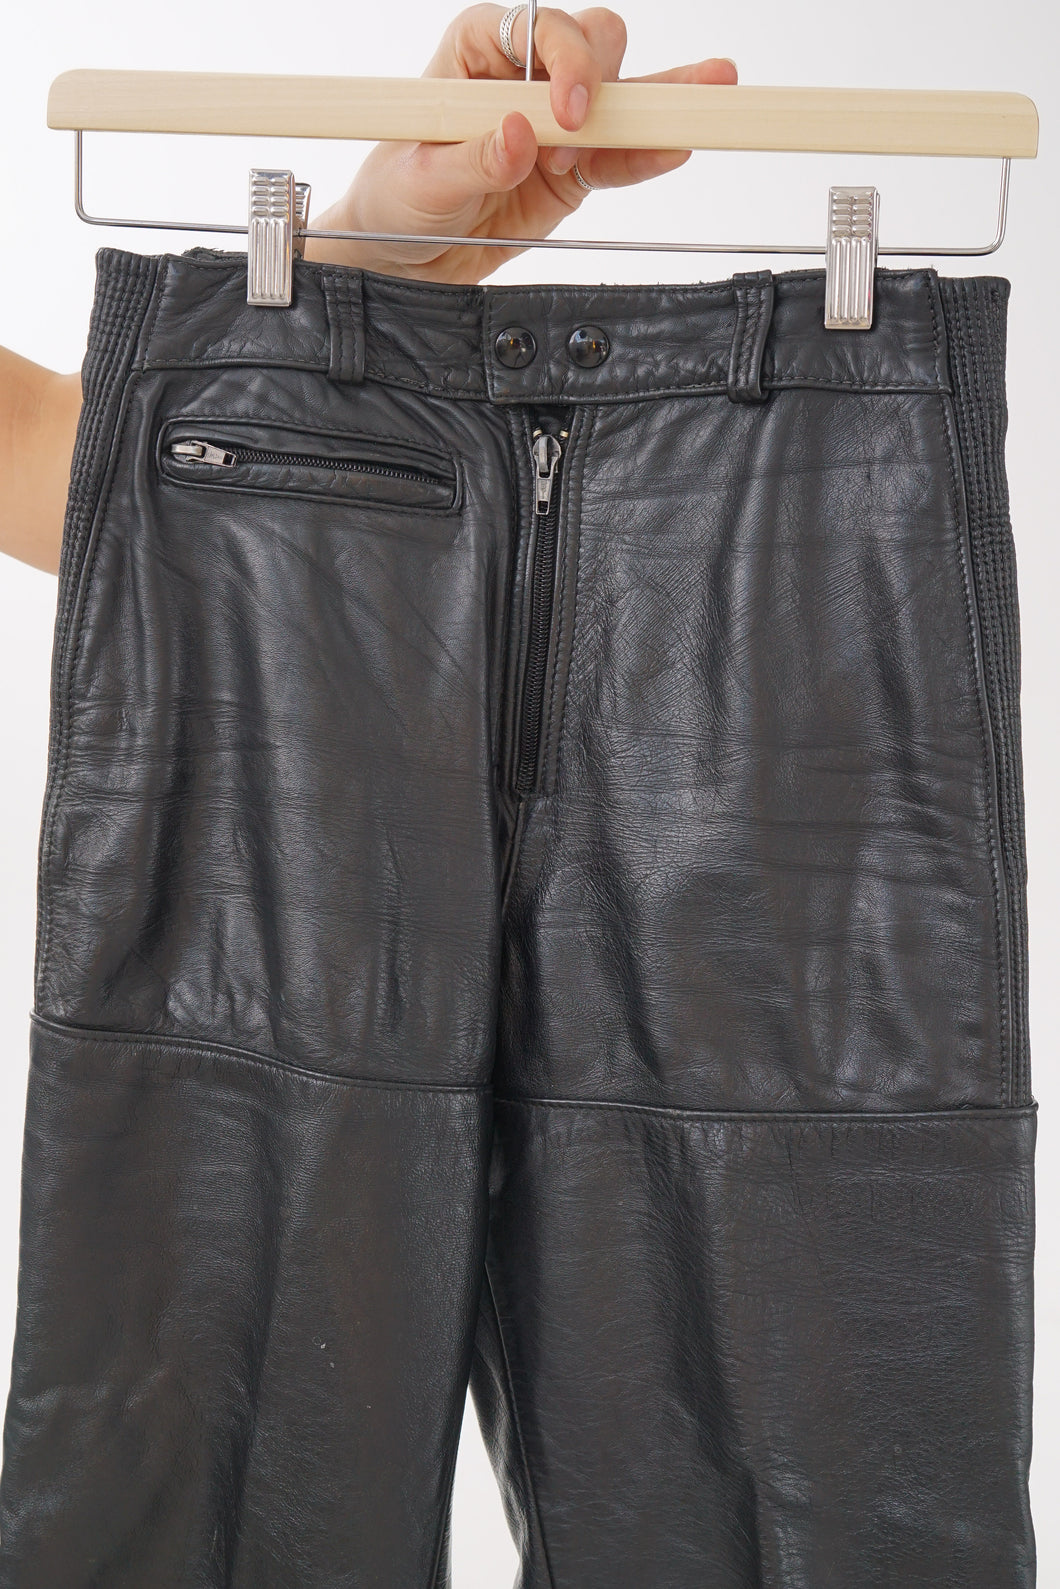 Pantalon en cuir fait au Canada Taurus pour femme taille 24 (XS)